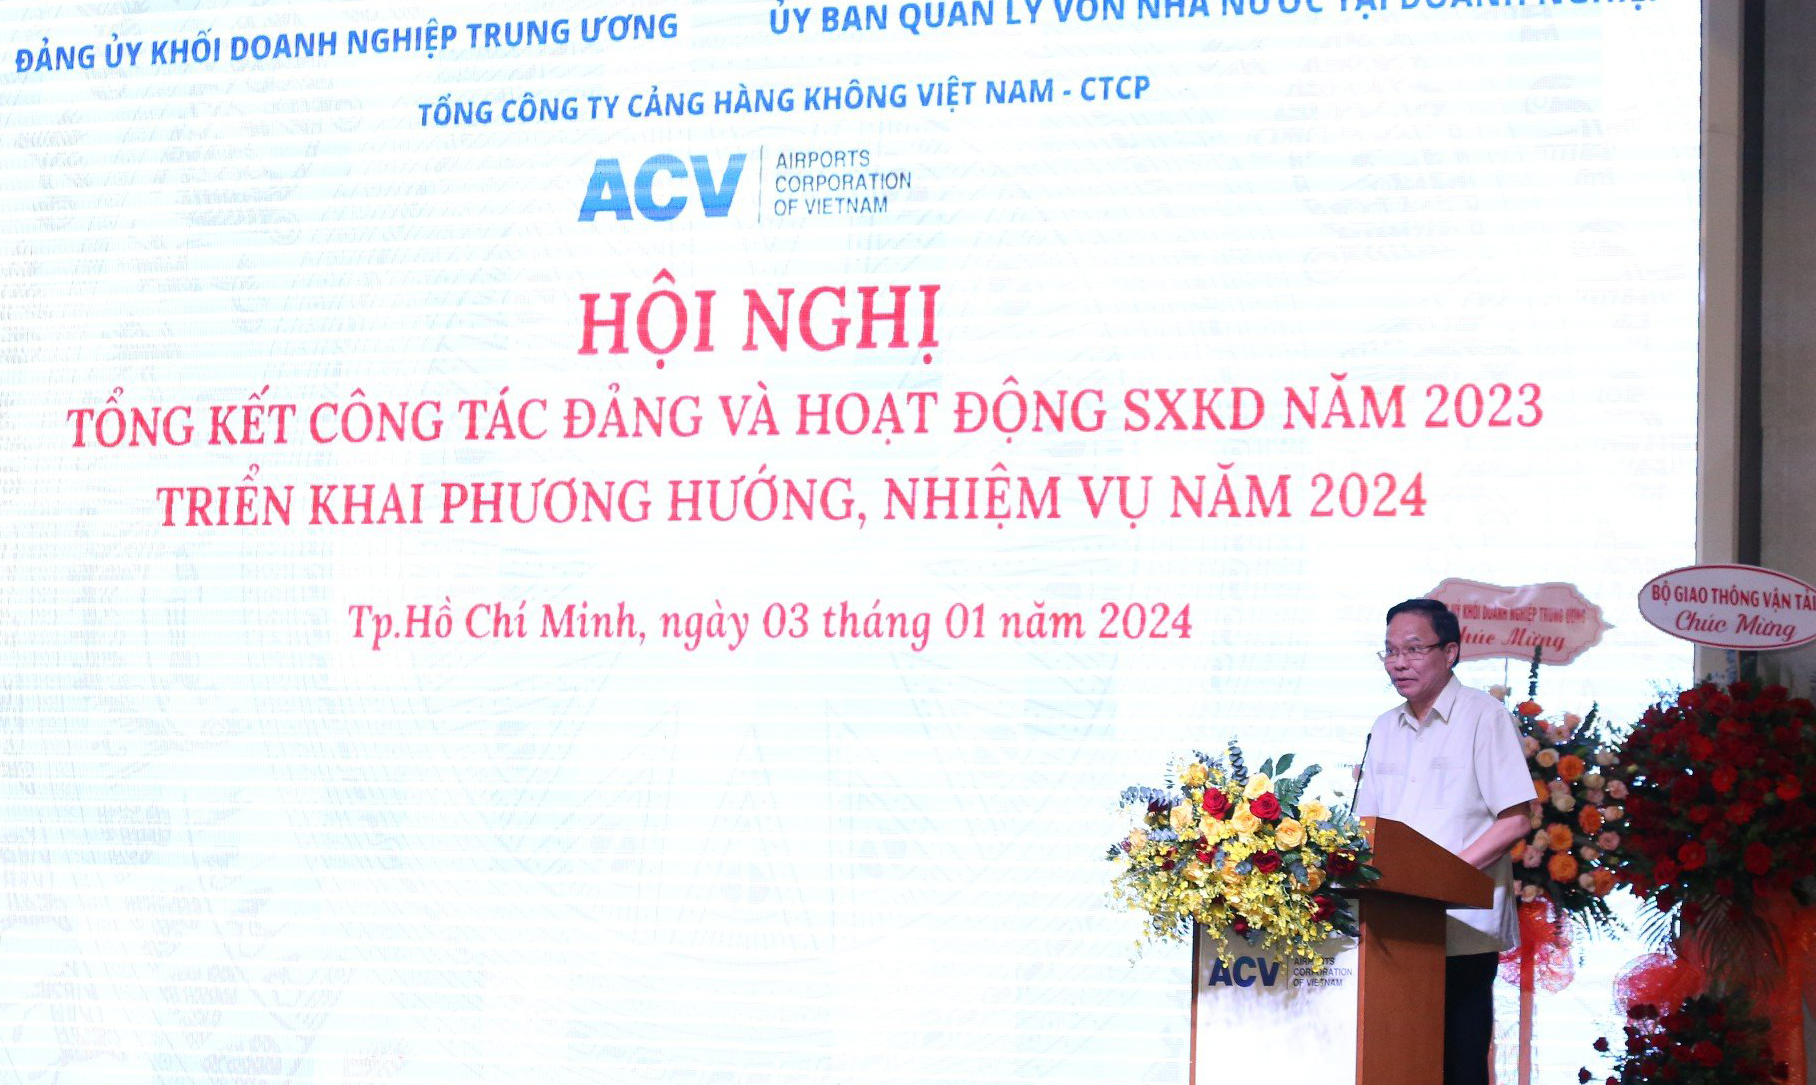 Đồng chí Lê Văn Châu, Phó Bí thư Đảng uỷ Khối Doanh nghiệp Trung ương phát biểu chỉ đạo tại Hội nghị.